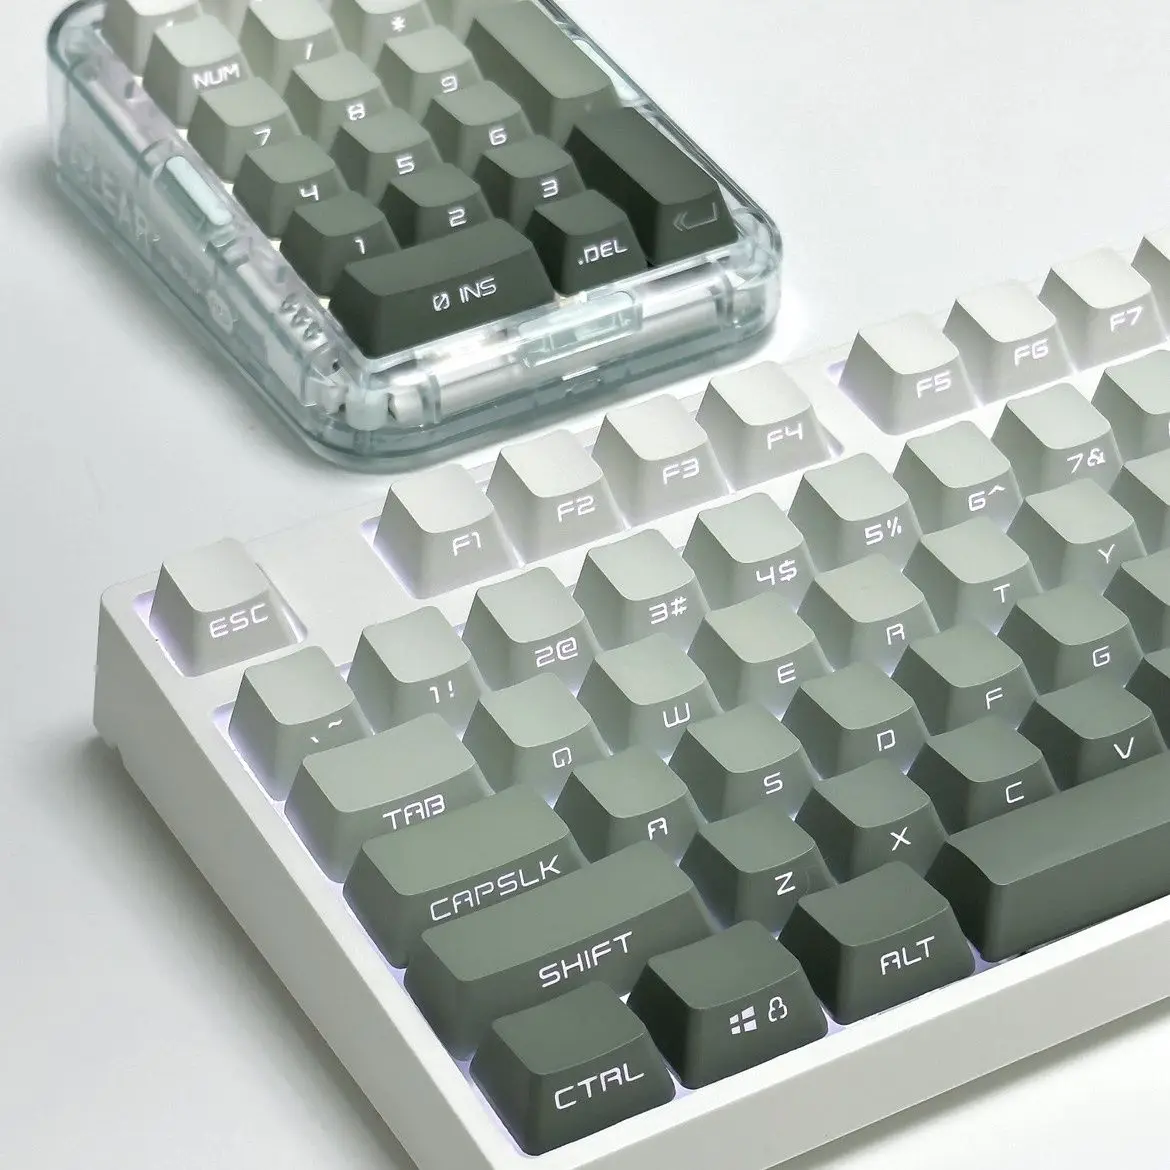 

Колпачок для клавиш с верхней/боковой печатью, колпачки для клавиш OEM, профиль, градиентные зеленые колпачки для клавиш Double Shot PBT, колпачок для клавиатуры с переключателями ANSI макет MX